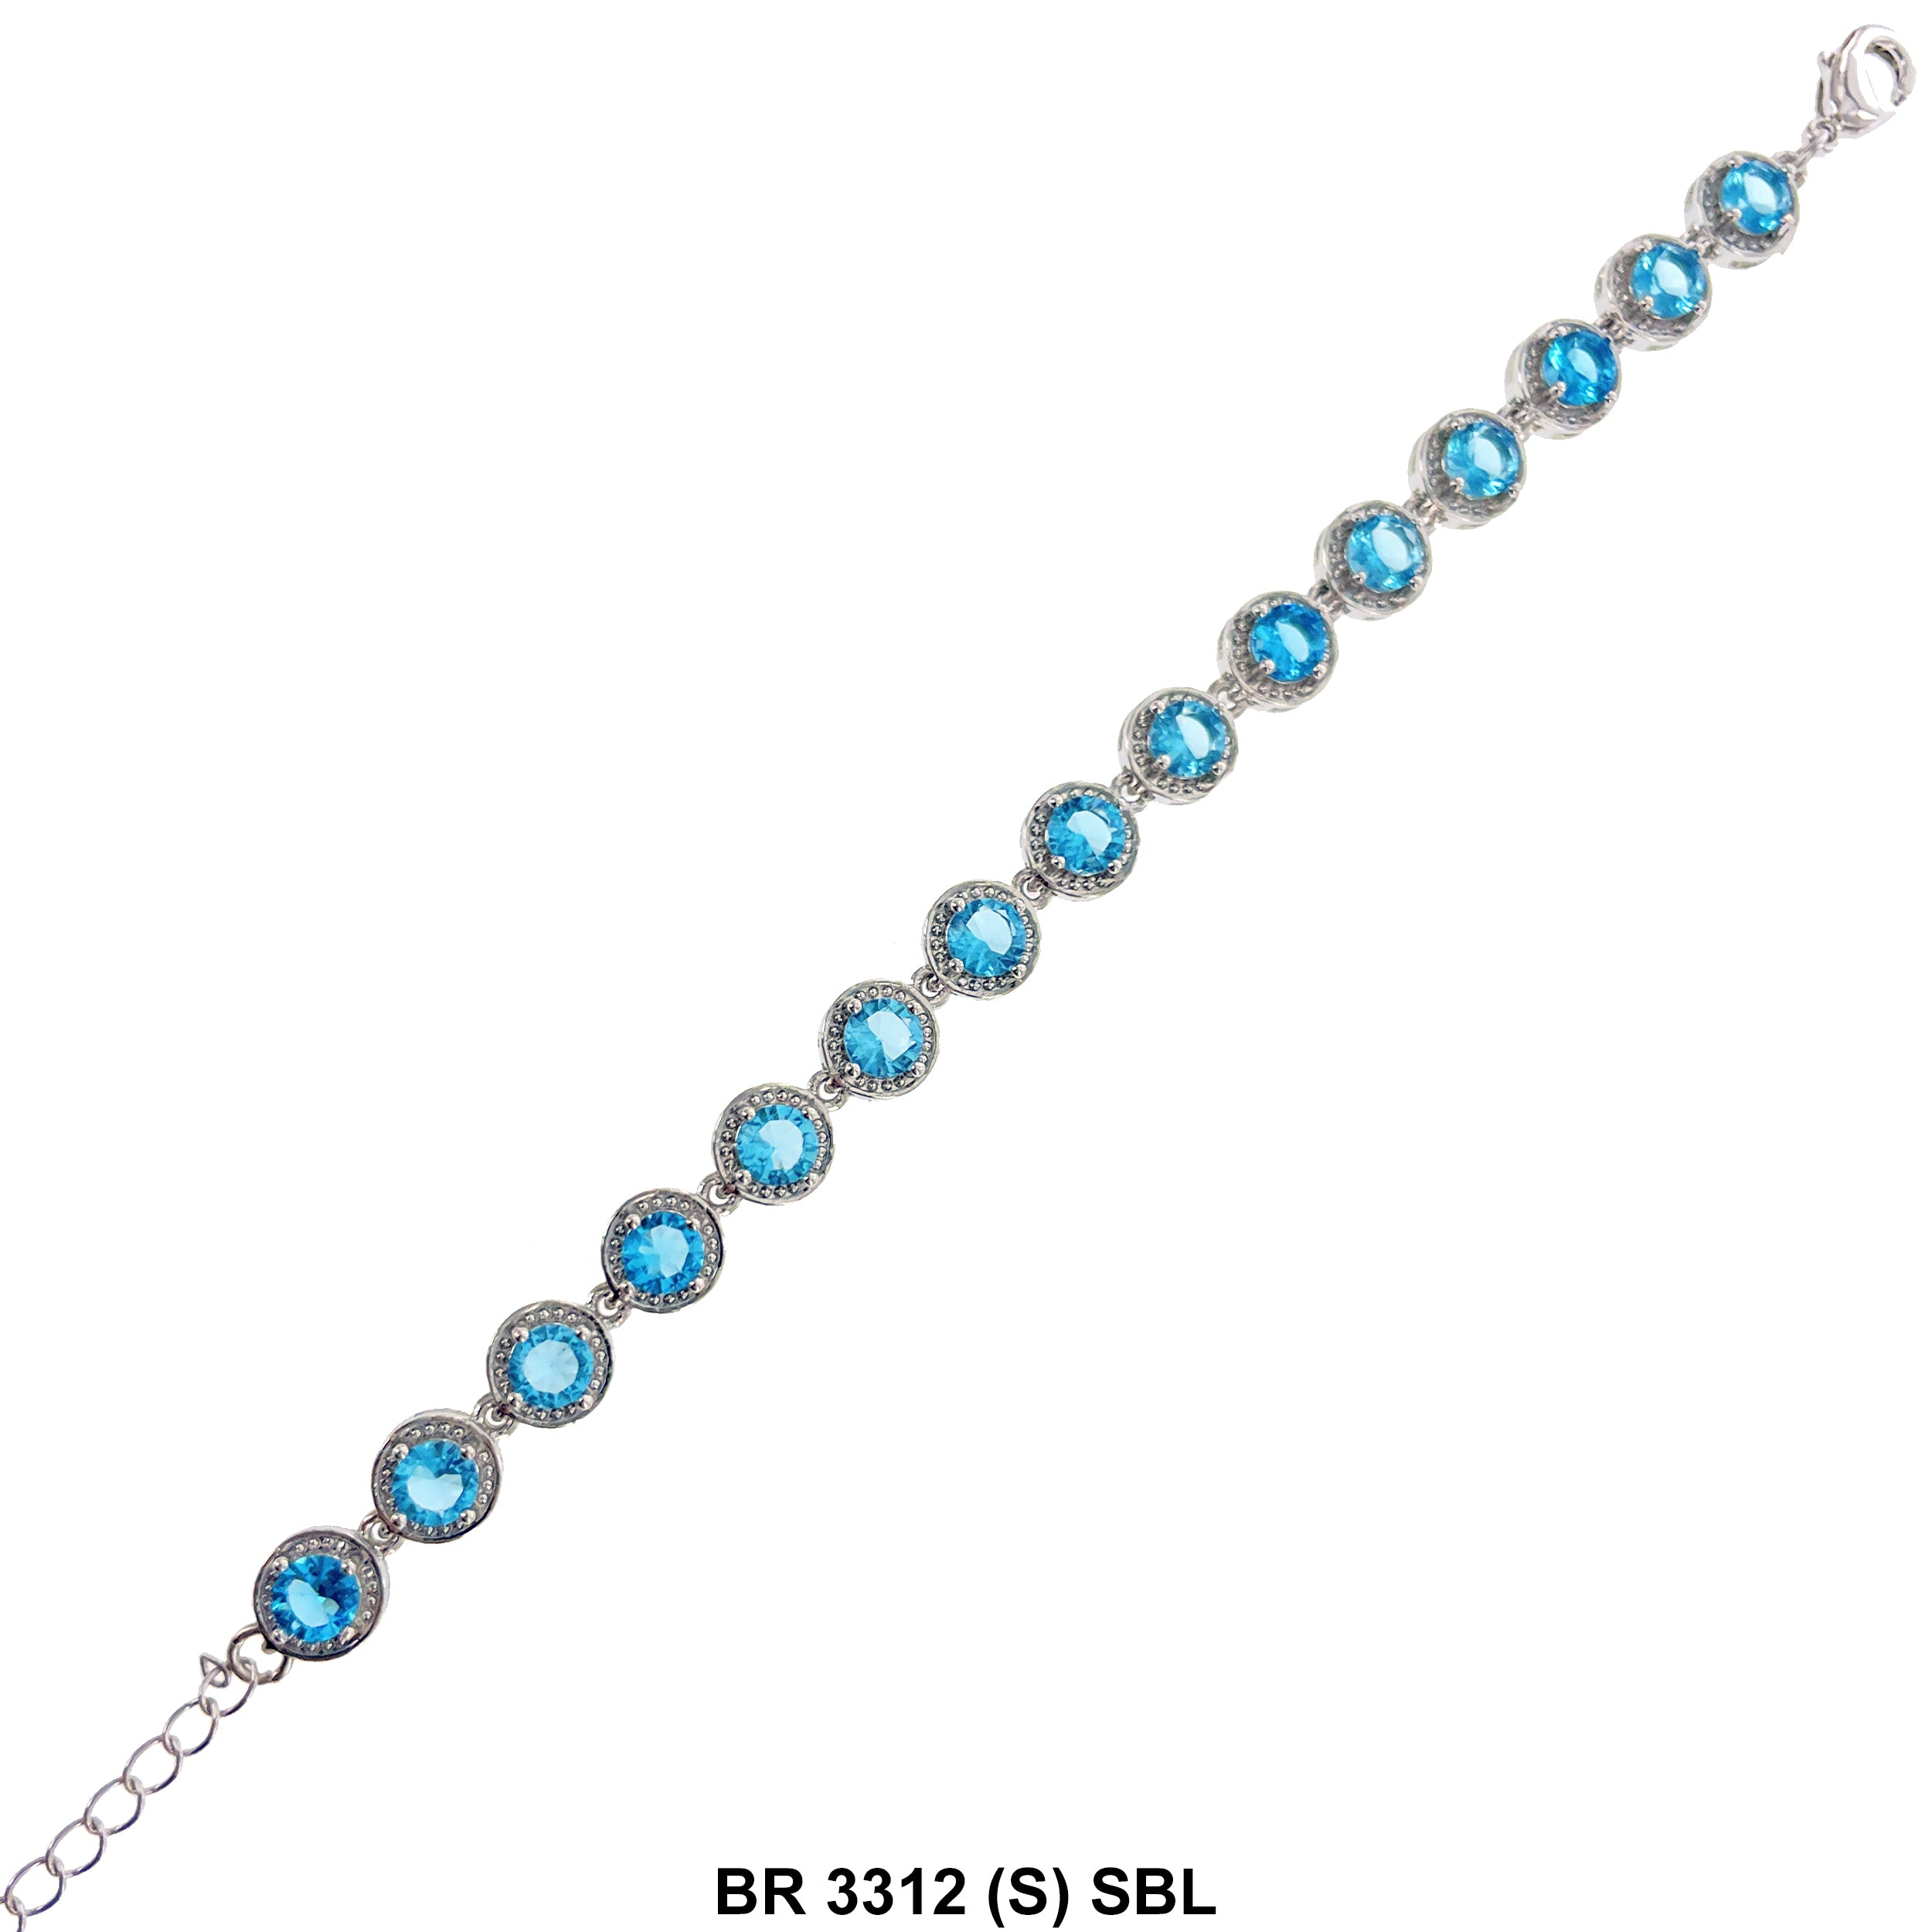 Cubic Zirconia Tennis Bracelet BR 3312 (S) SBL